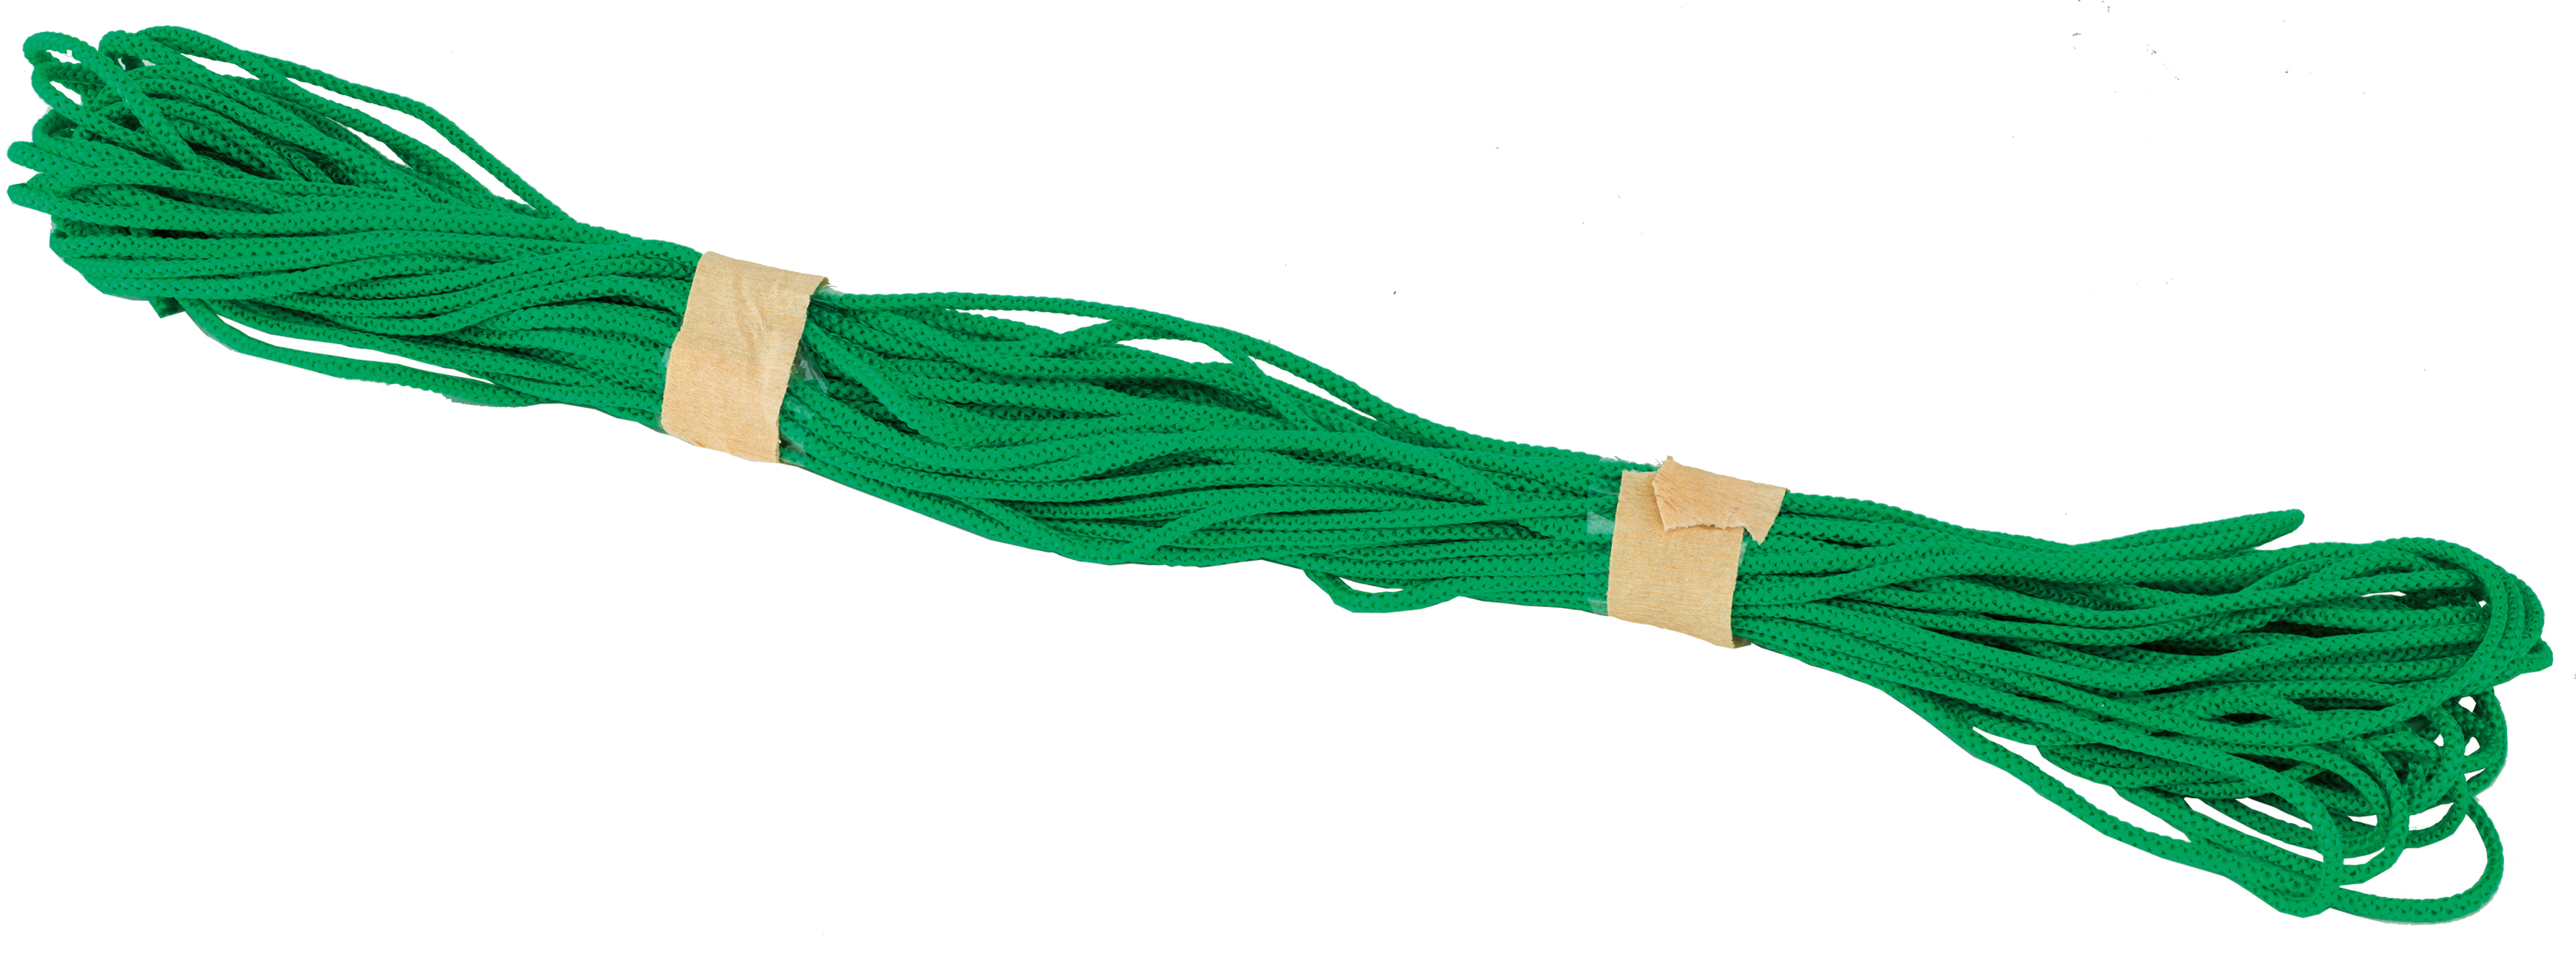 Netzreparaturschnur grün